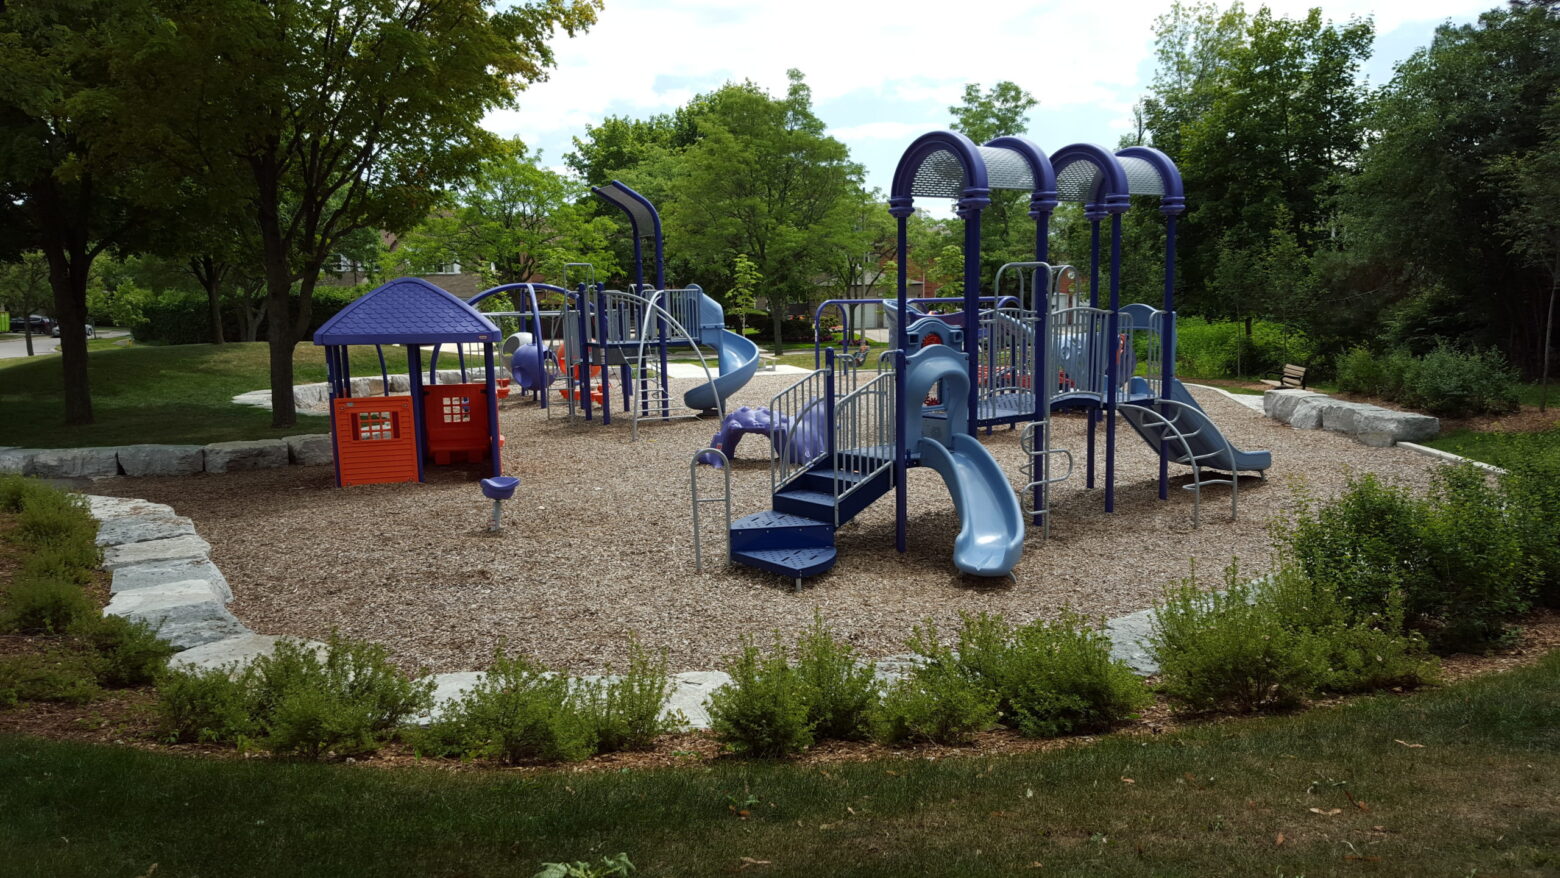 Childrens playground